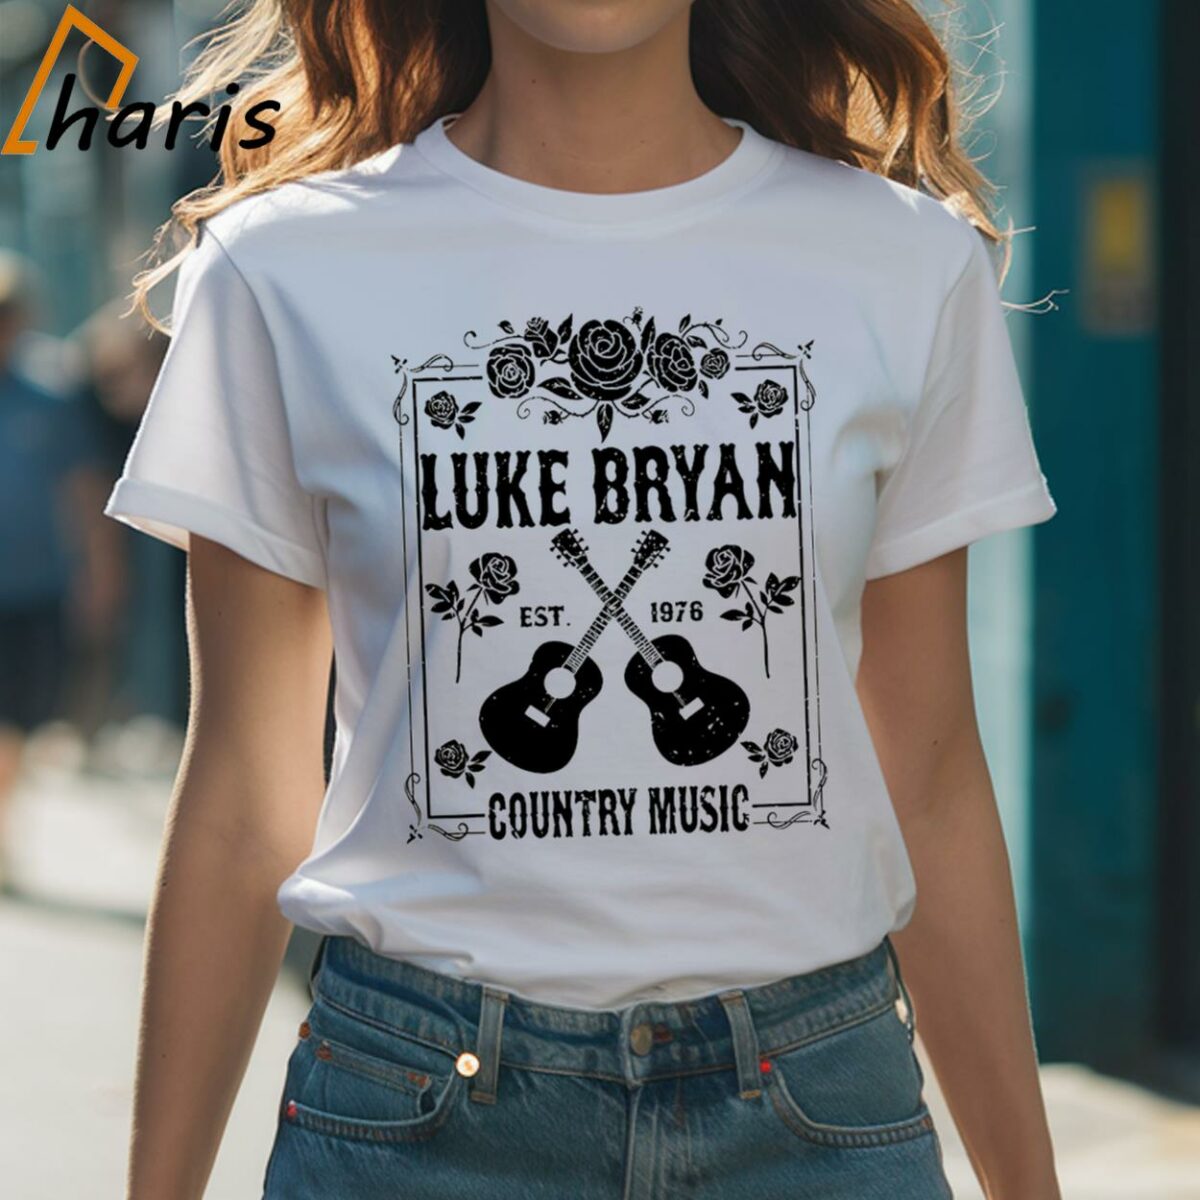 Luke Bryan Retro 90s T shirt 1 Shirt 1